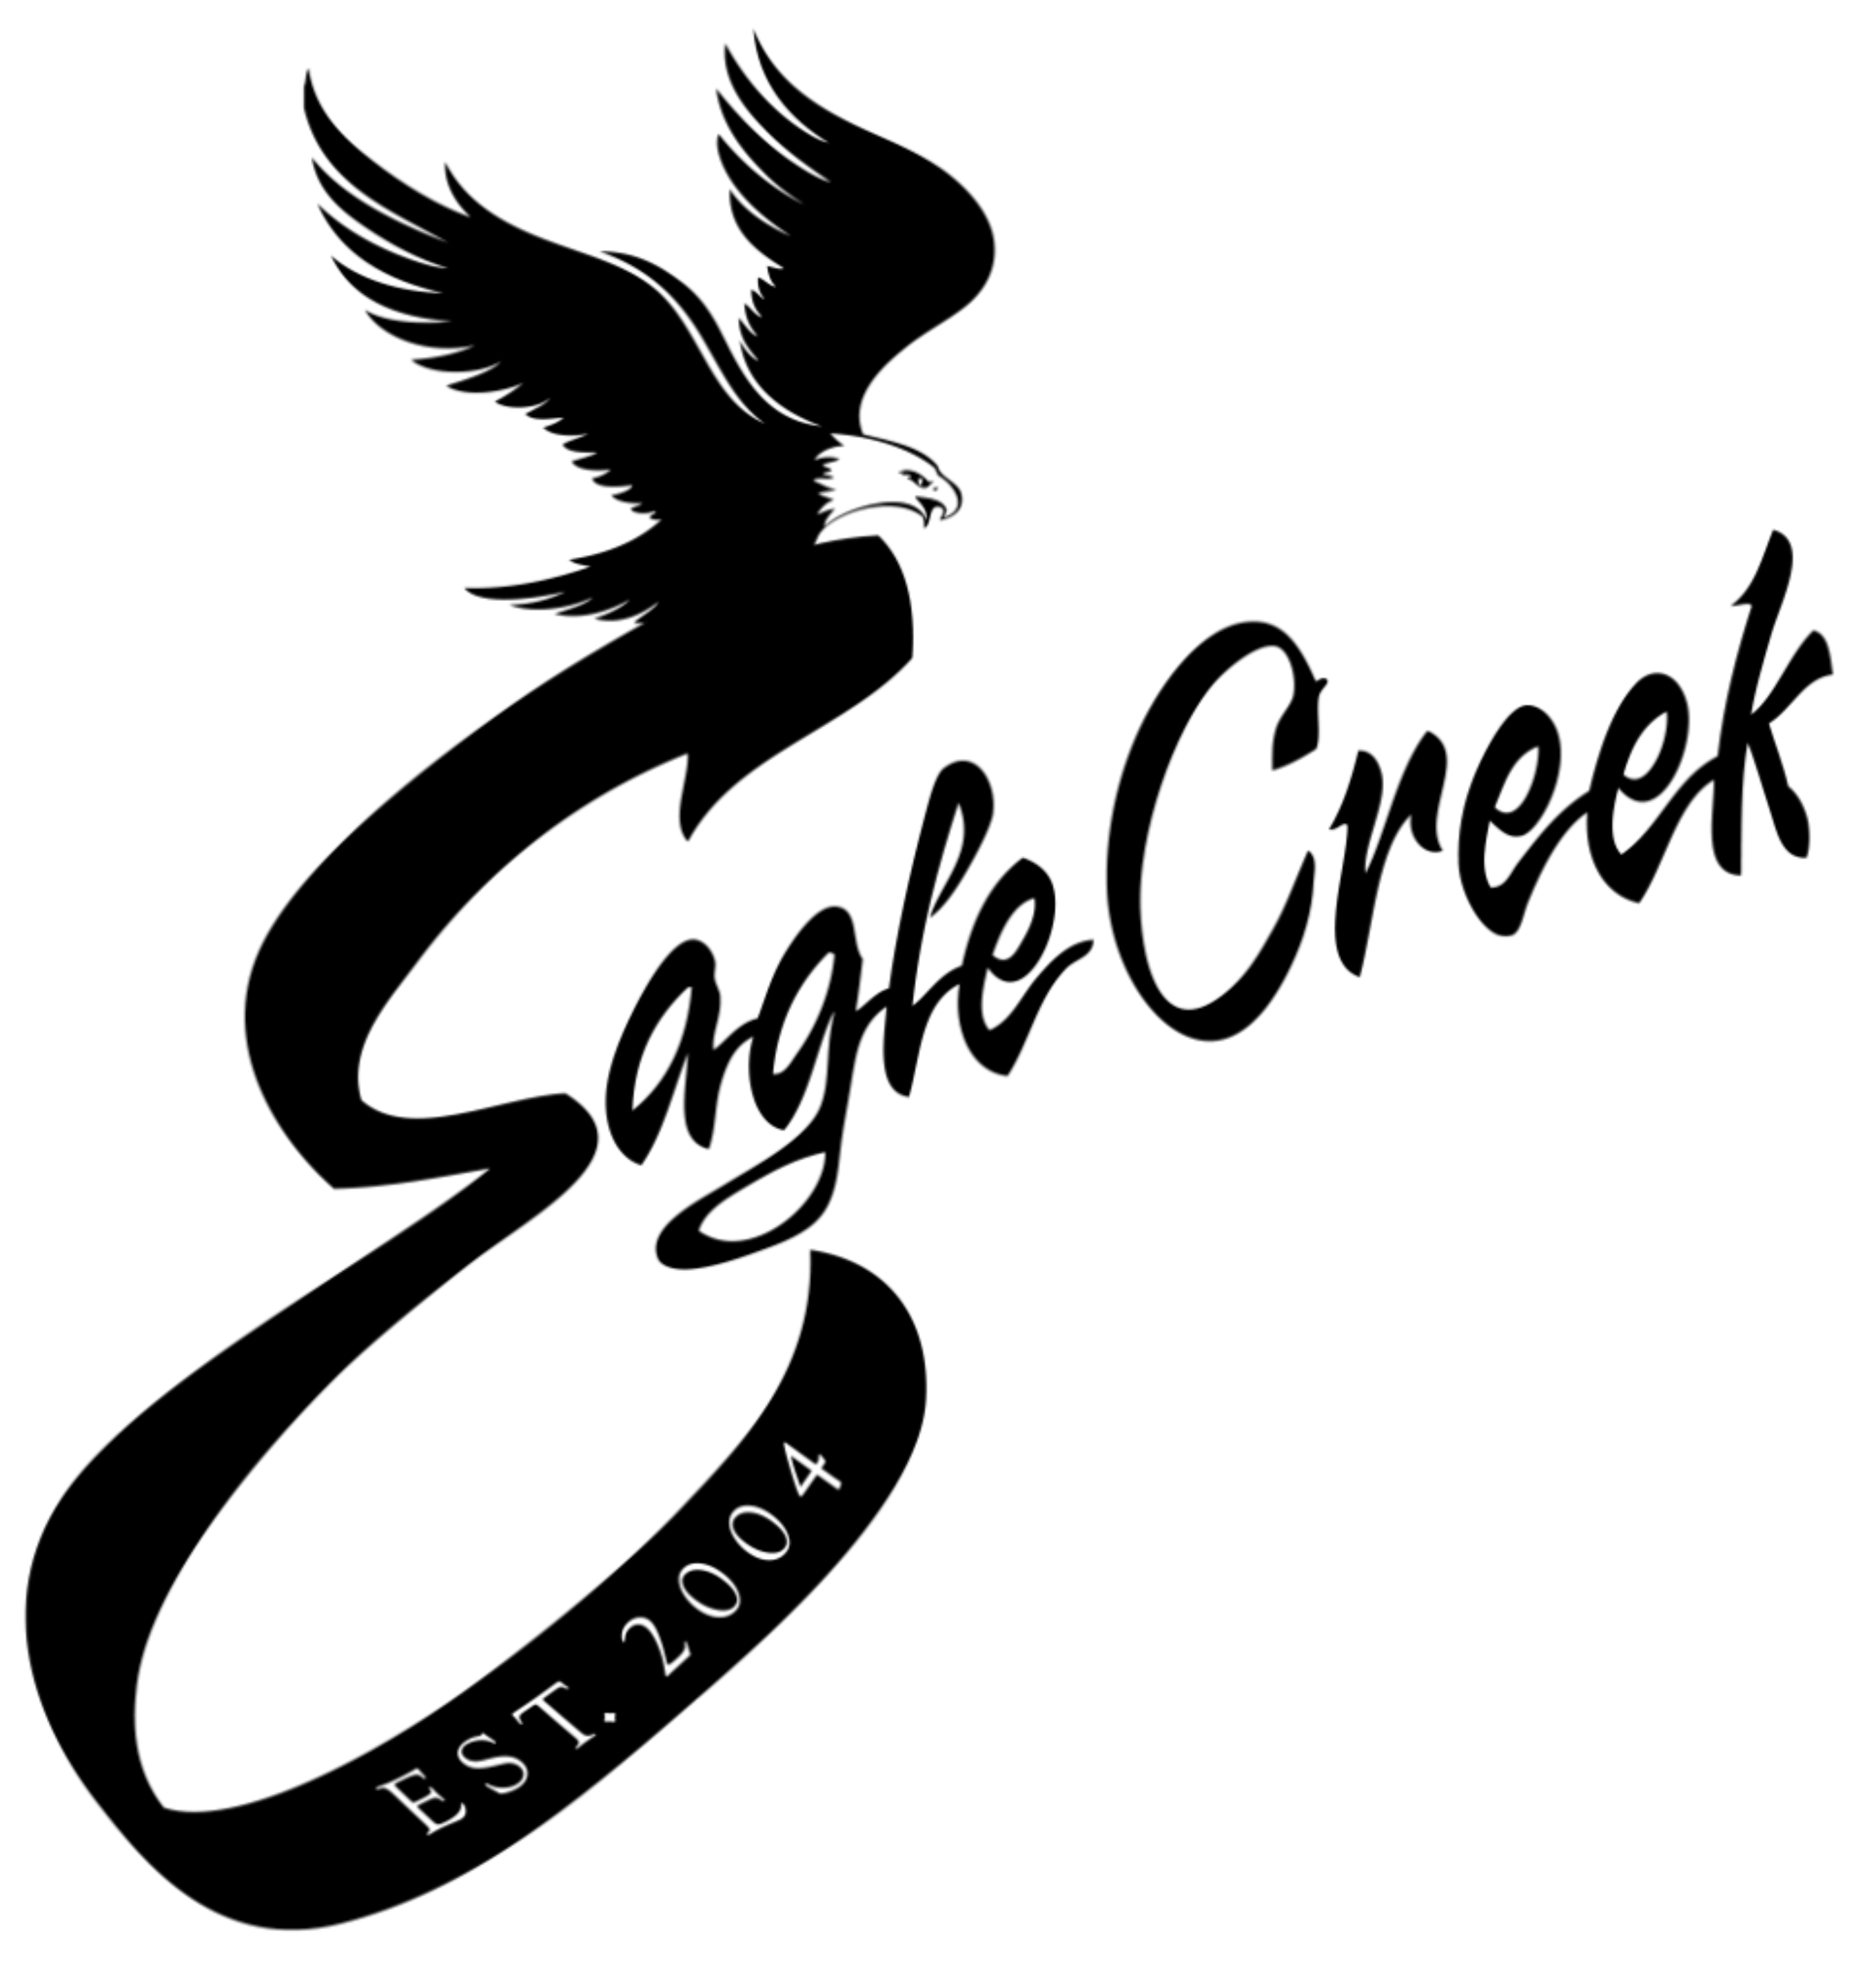  Eagle Creek Golf Club